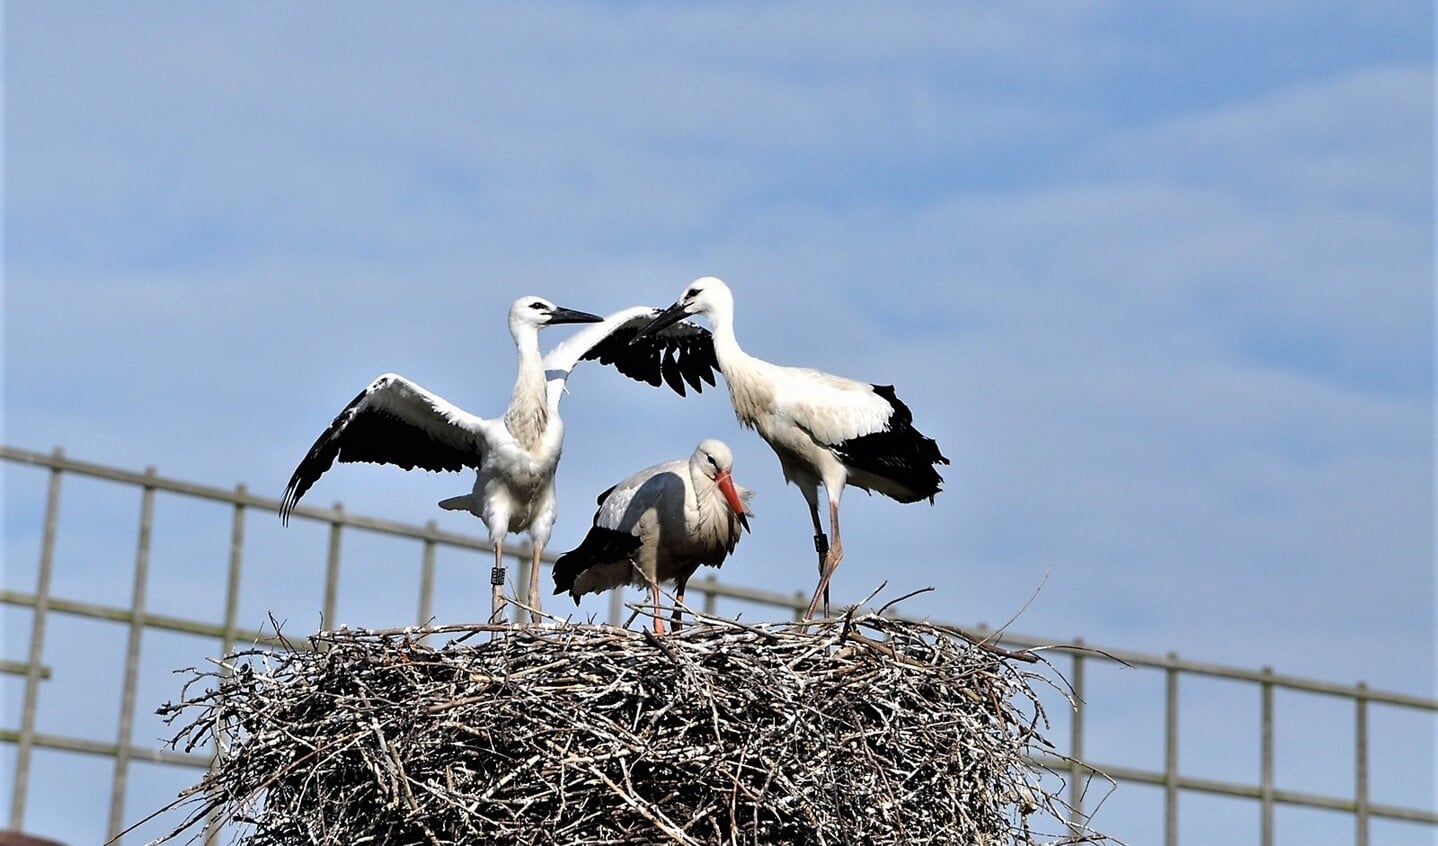 Ooievaars op het nest bij molen De Vlieger in Voorburg (archieffoto Caroline Walta).